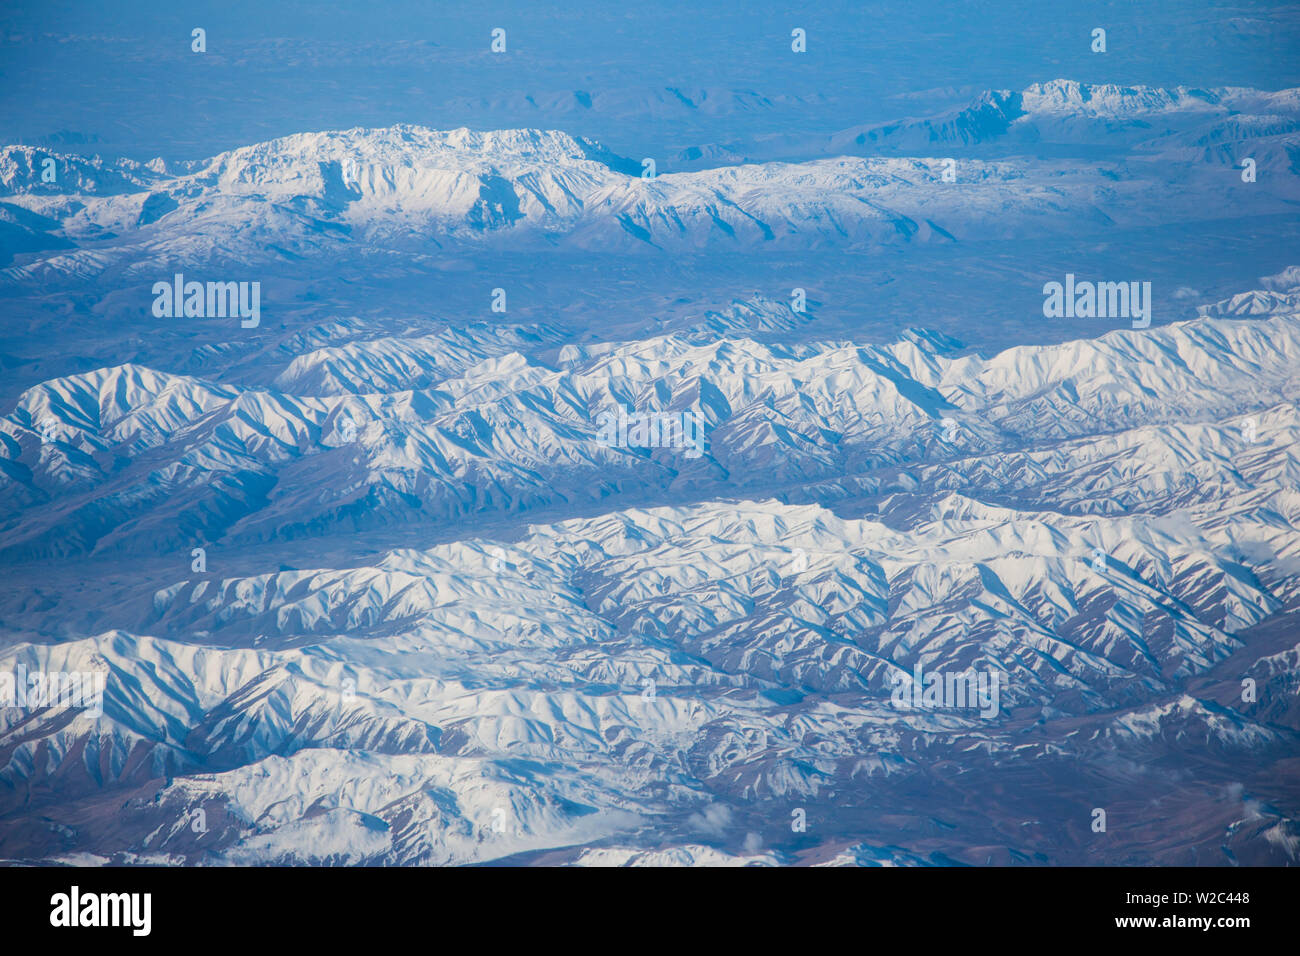 Zagros Mountains, Iran Stock Photo